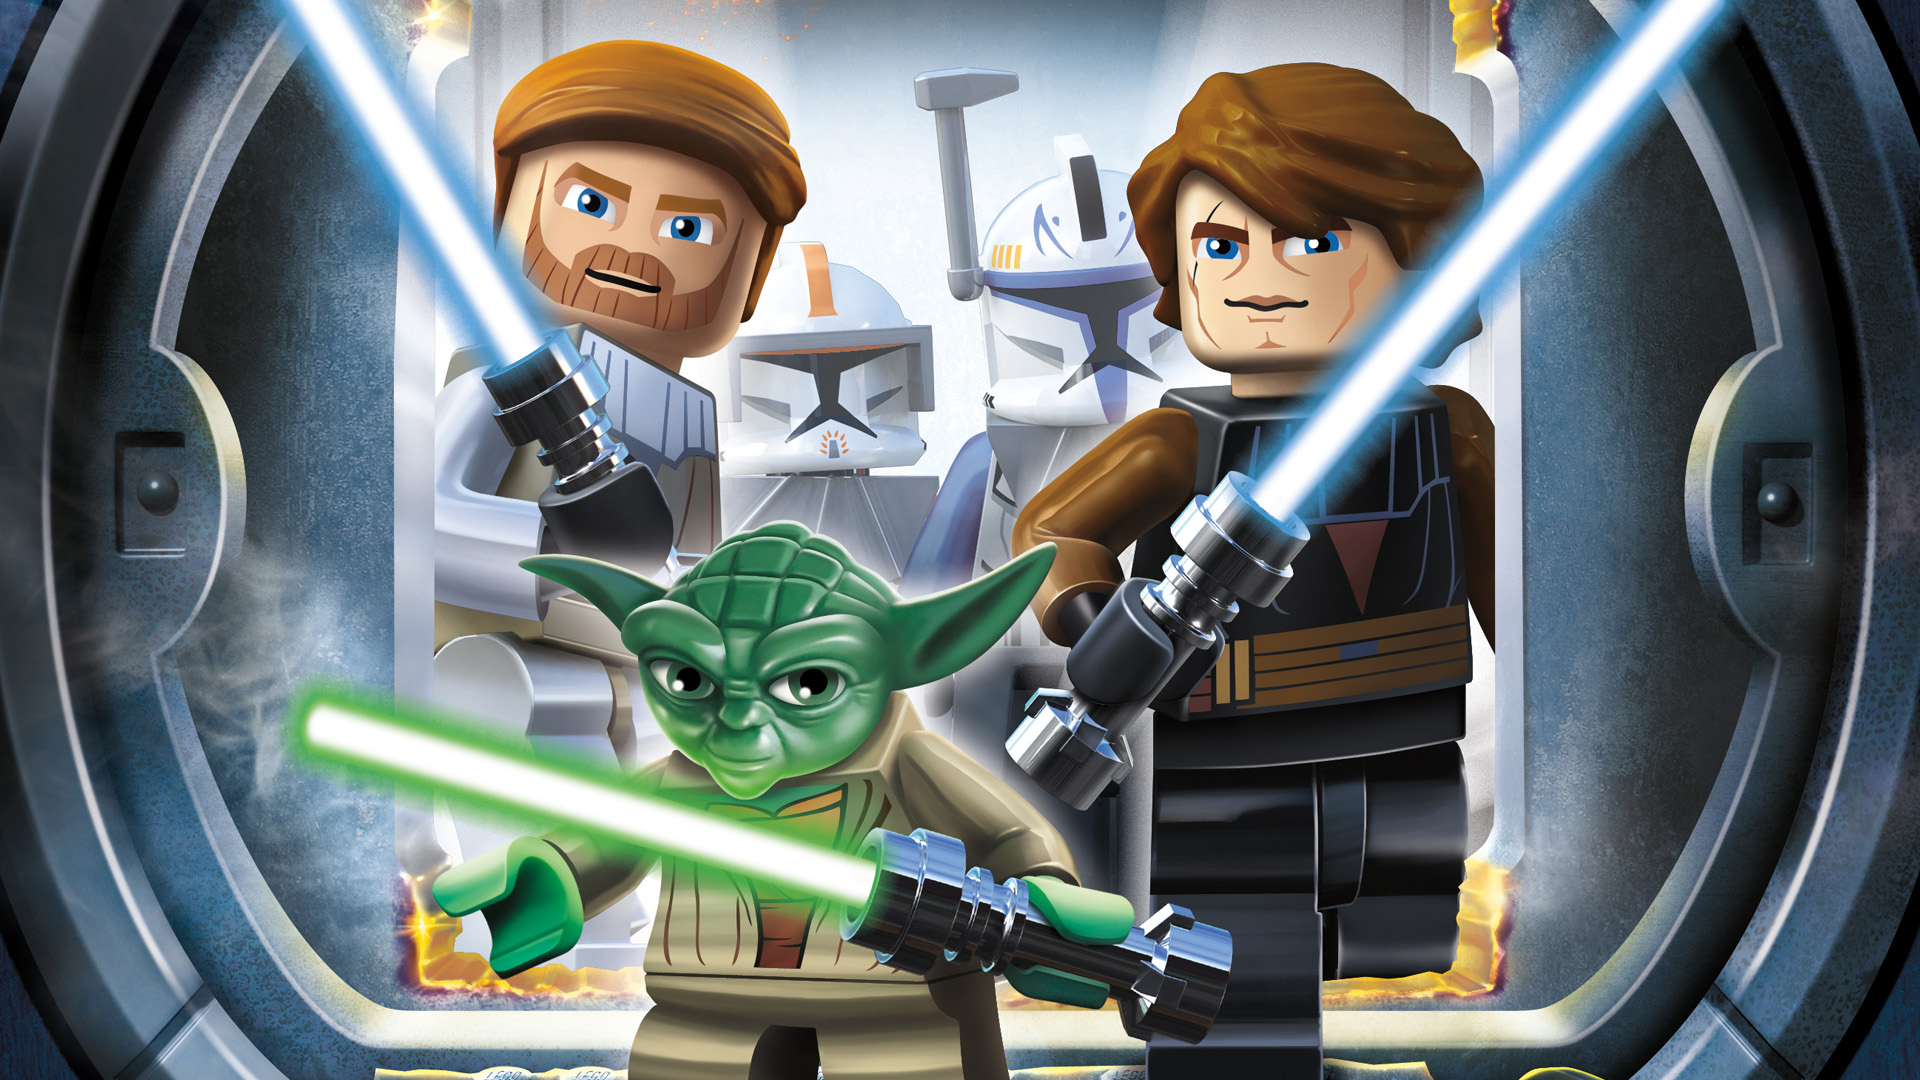 Скачать обои Lego Звездные Войны Iii: Войны Клонов на телефон бесплатно